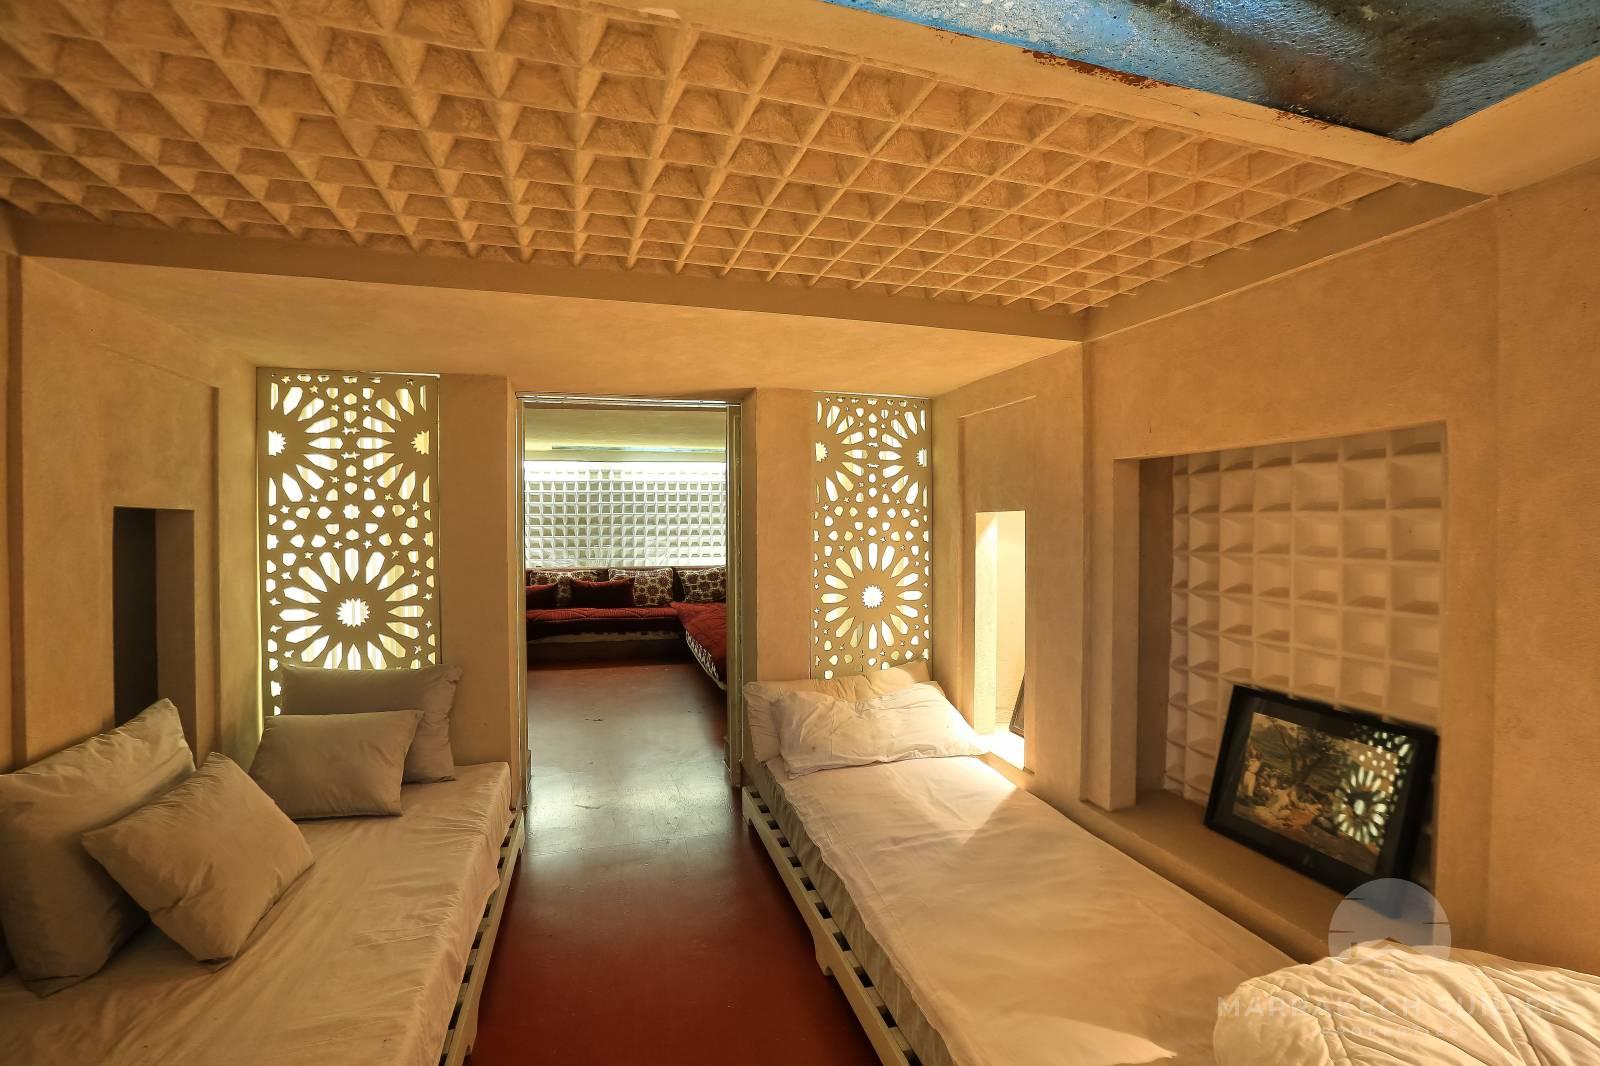 Stunning modernist luxury villa for sale Marrakech in the Palmeraie